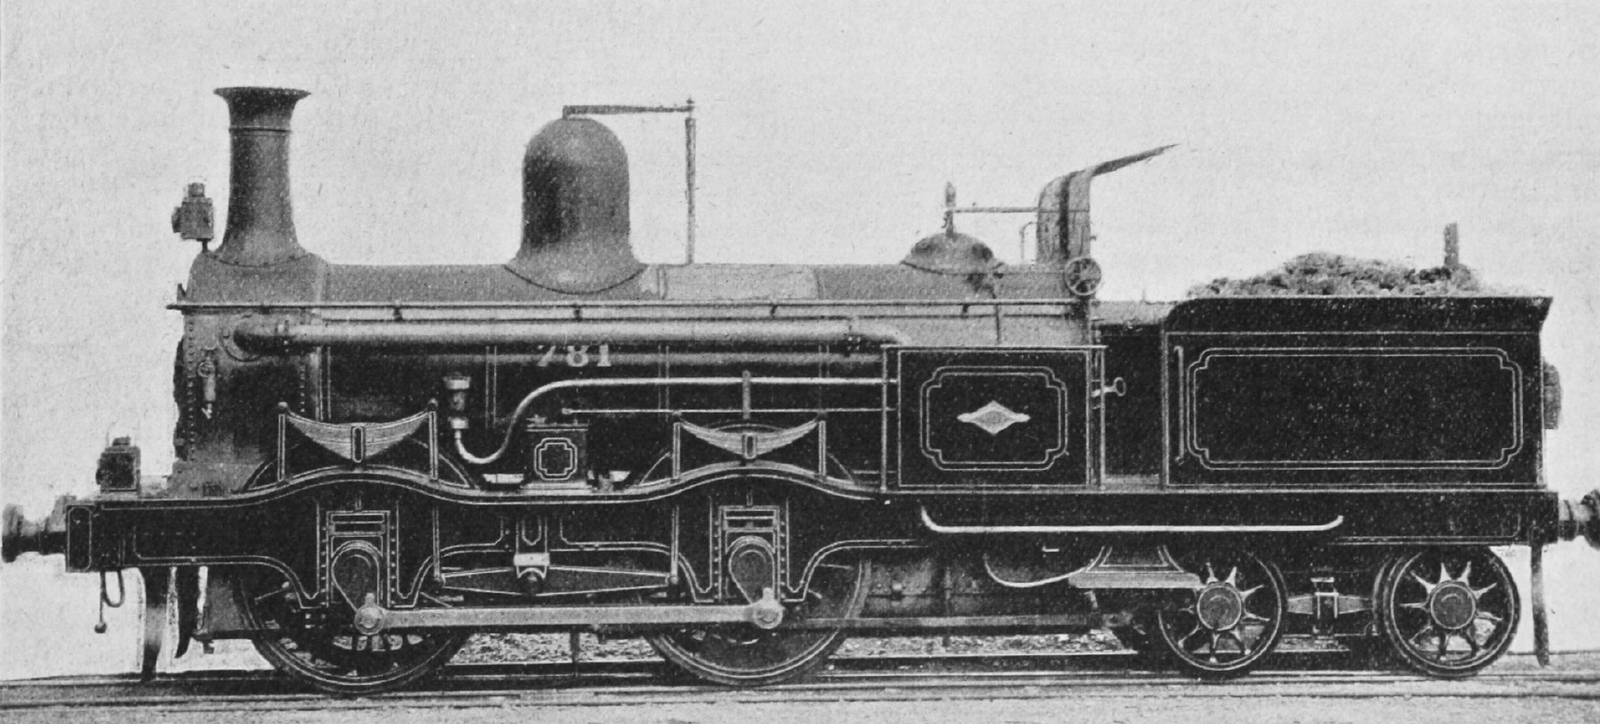 No. 781 as built